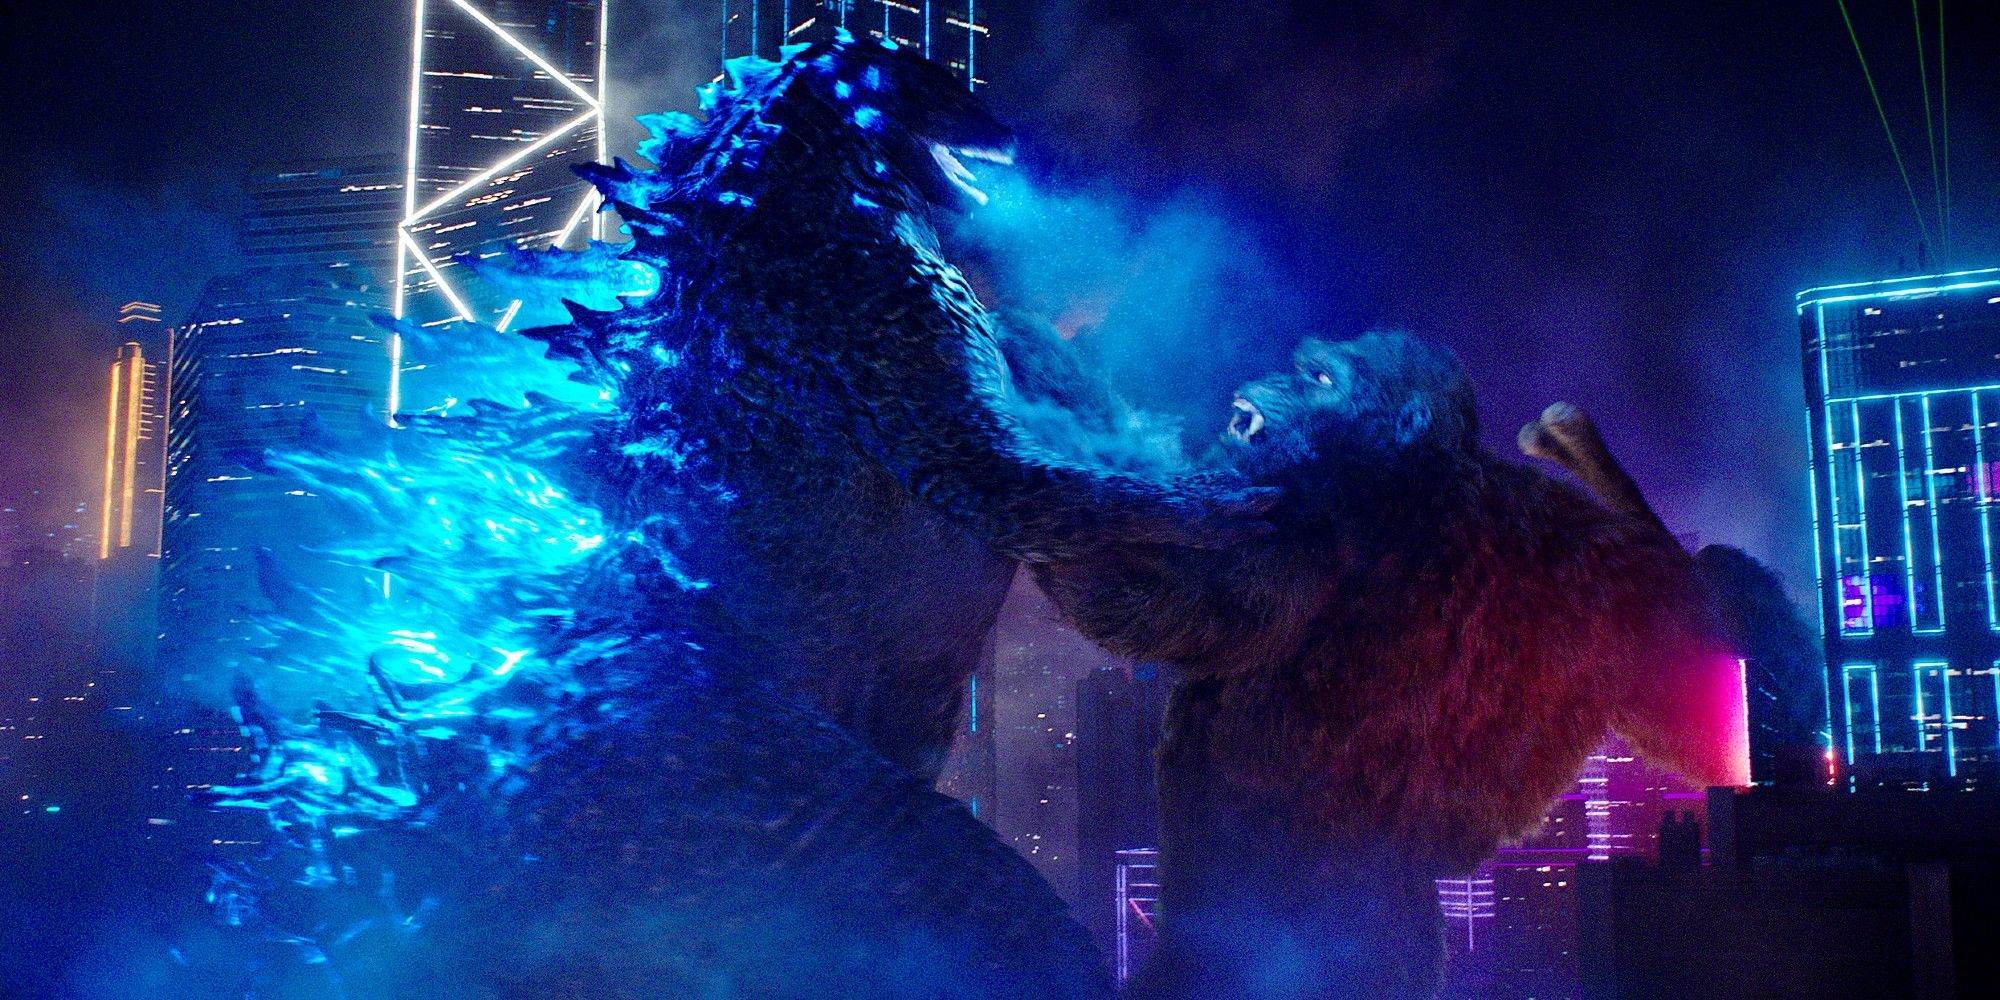 Godzilla fighting Kong in Hong Kong at night